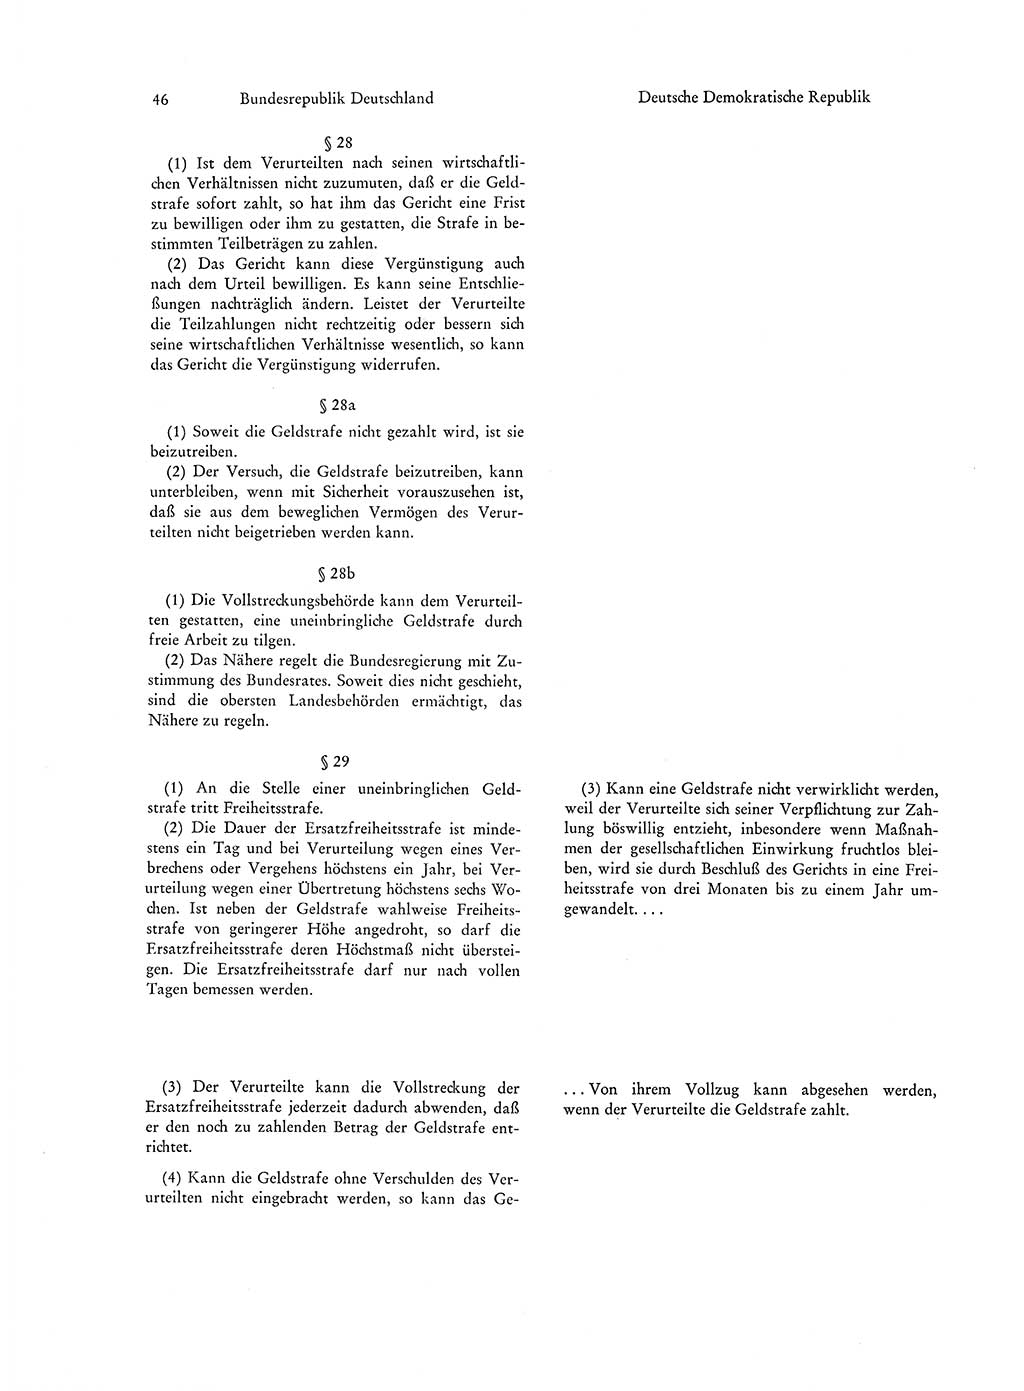 Strafgesetzgebung in Deutschland [Bundesrepublik Deutschland (BRD) und Deutsche Demokratische Republik (DDR)] 1972, Seite 46 (Str.-Ges. Dtl. StGB BRD DDR 1972, S. 46)